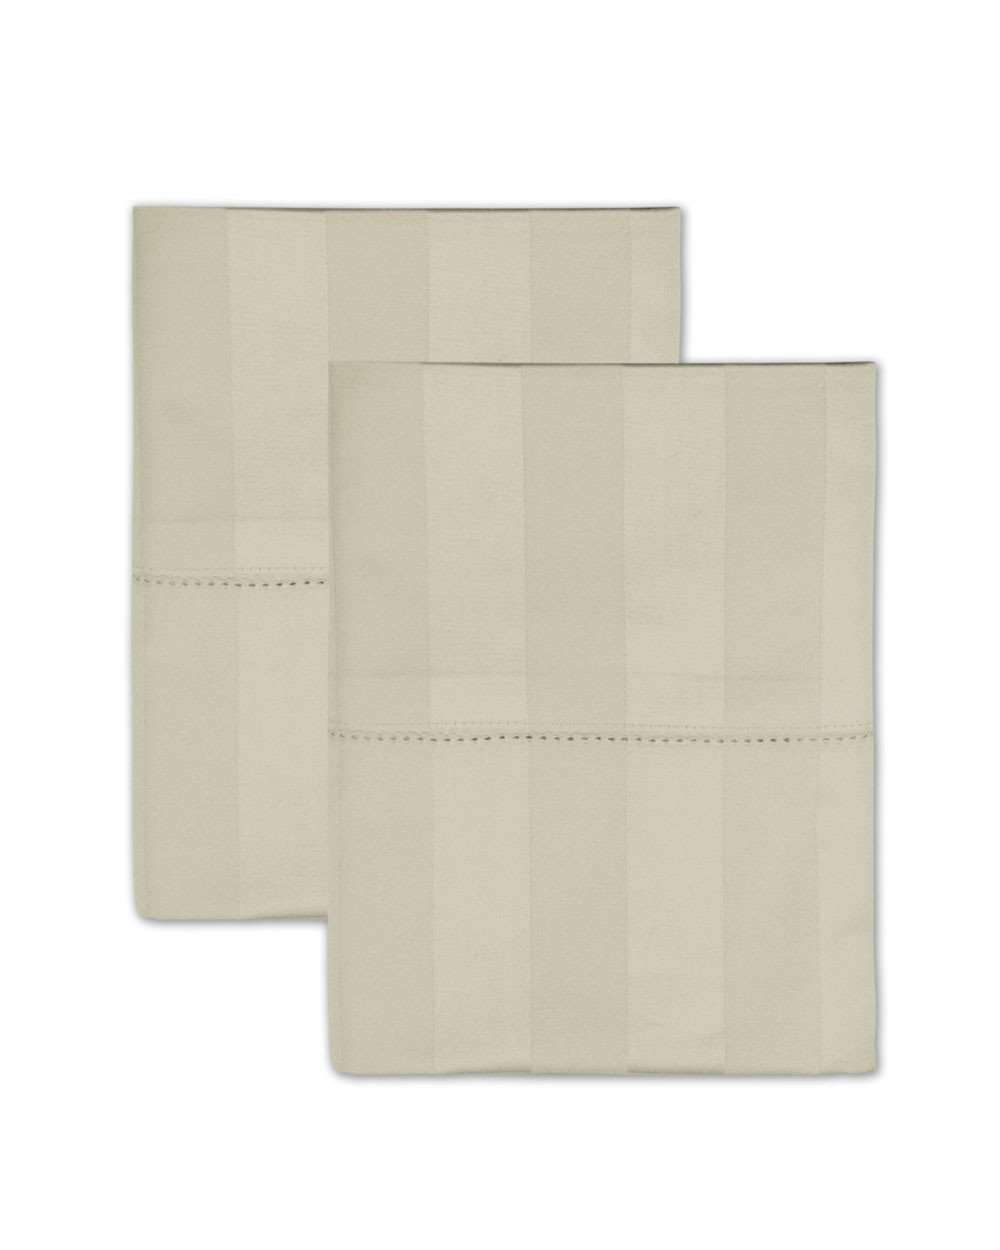 Giotta Luxury Pillow Cases - Luxor Linens 